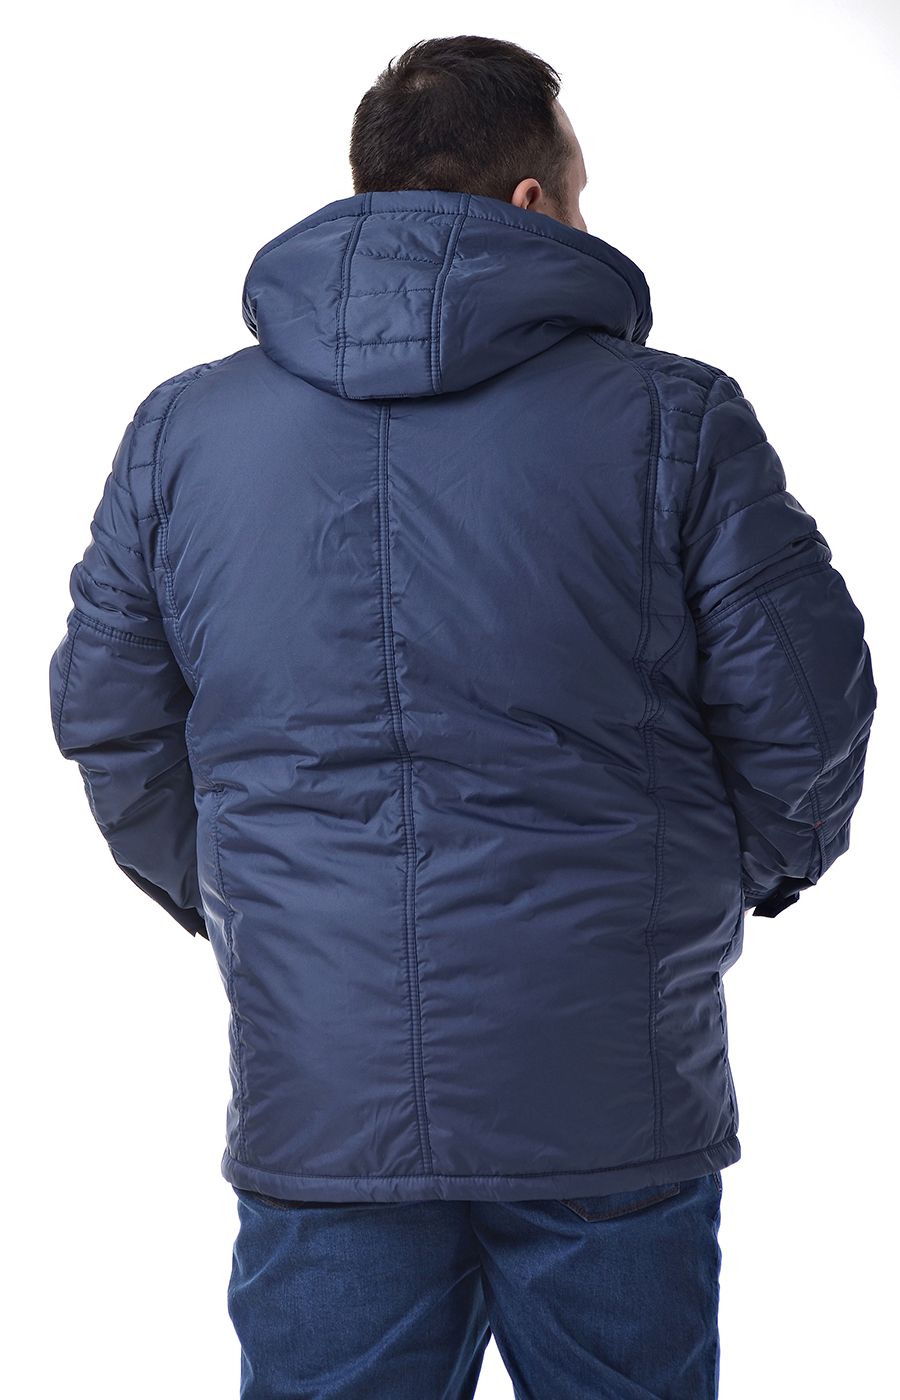 Куртка Талисман-2 синяя большого размера